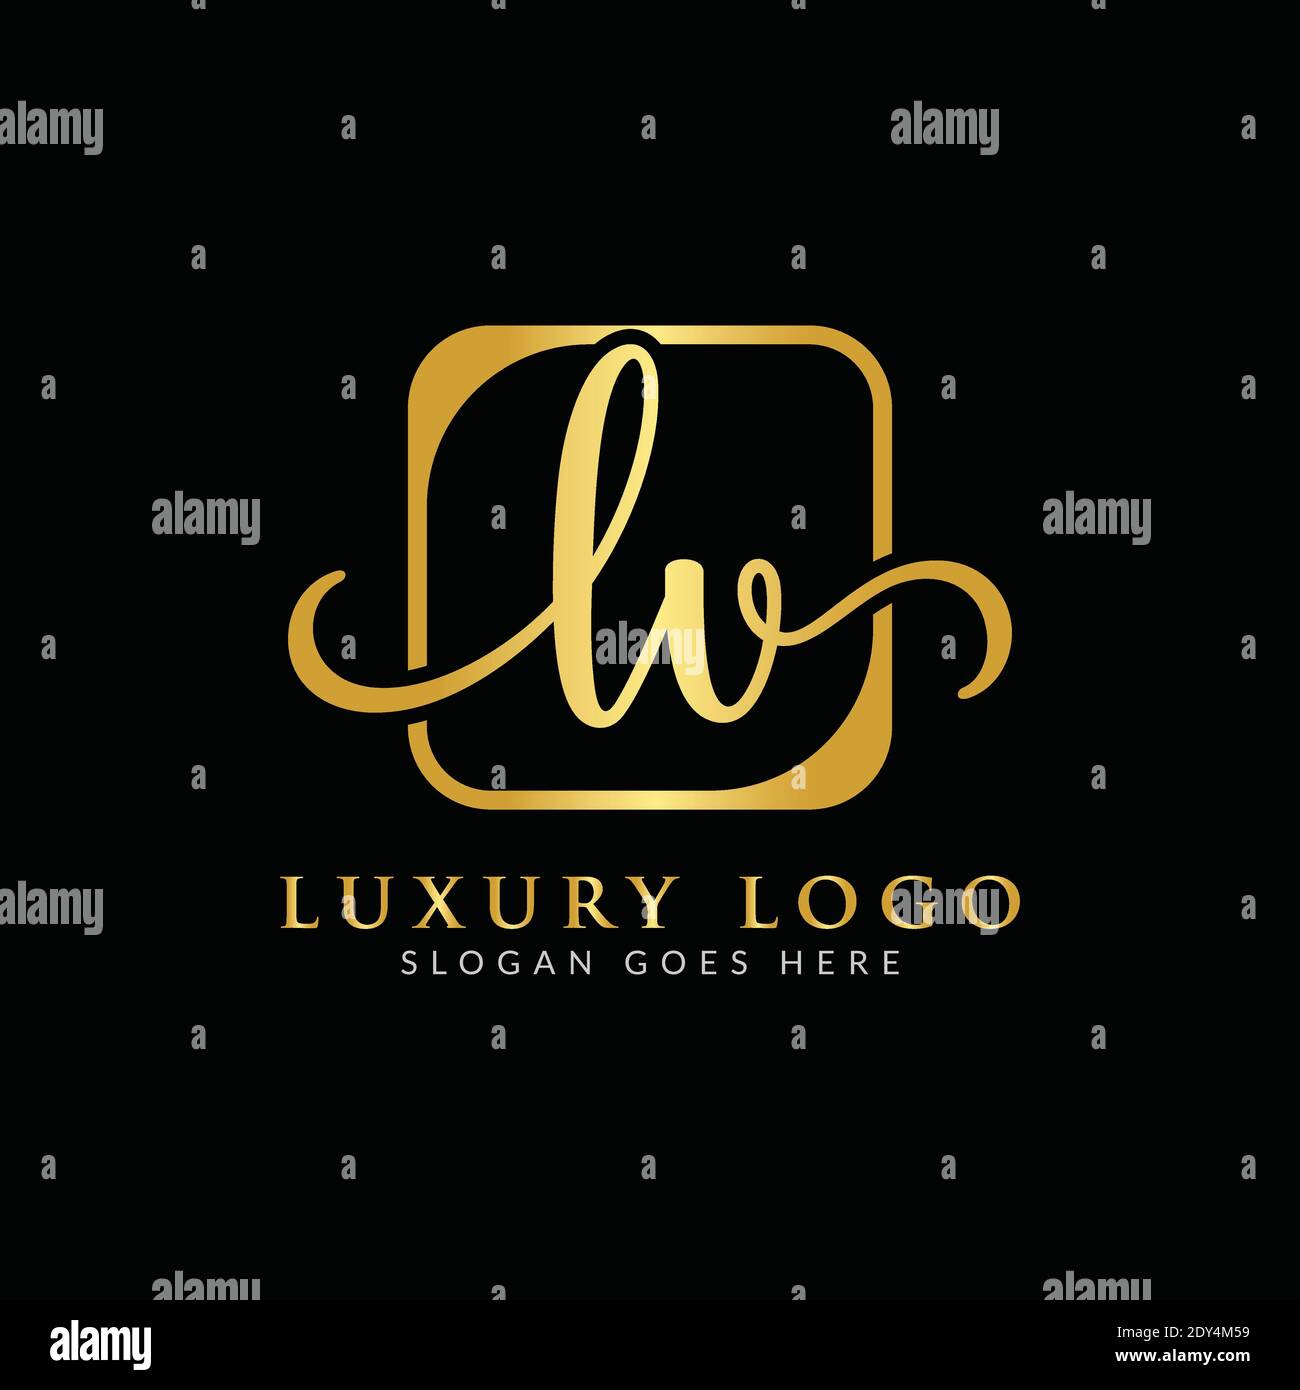 Logotipo de letra lv Imágenes recortadas de stock - Alamy